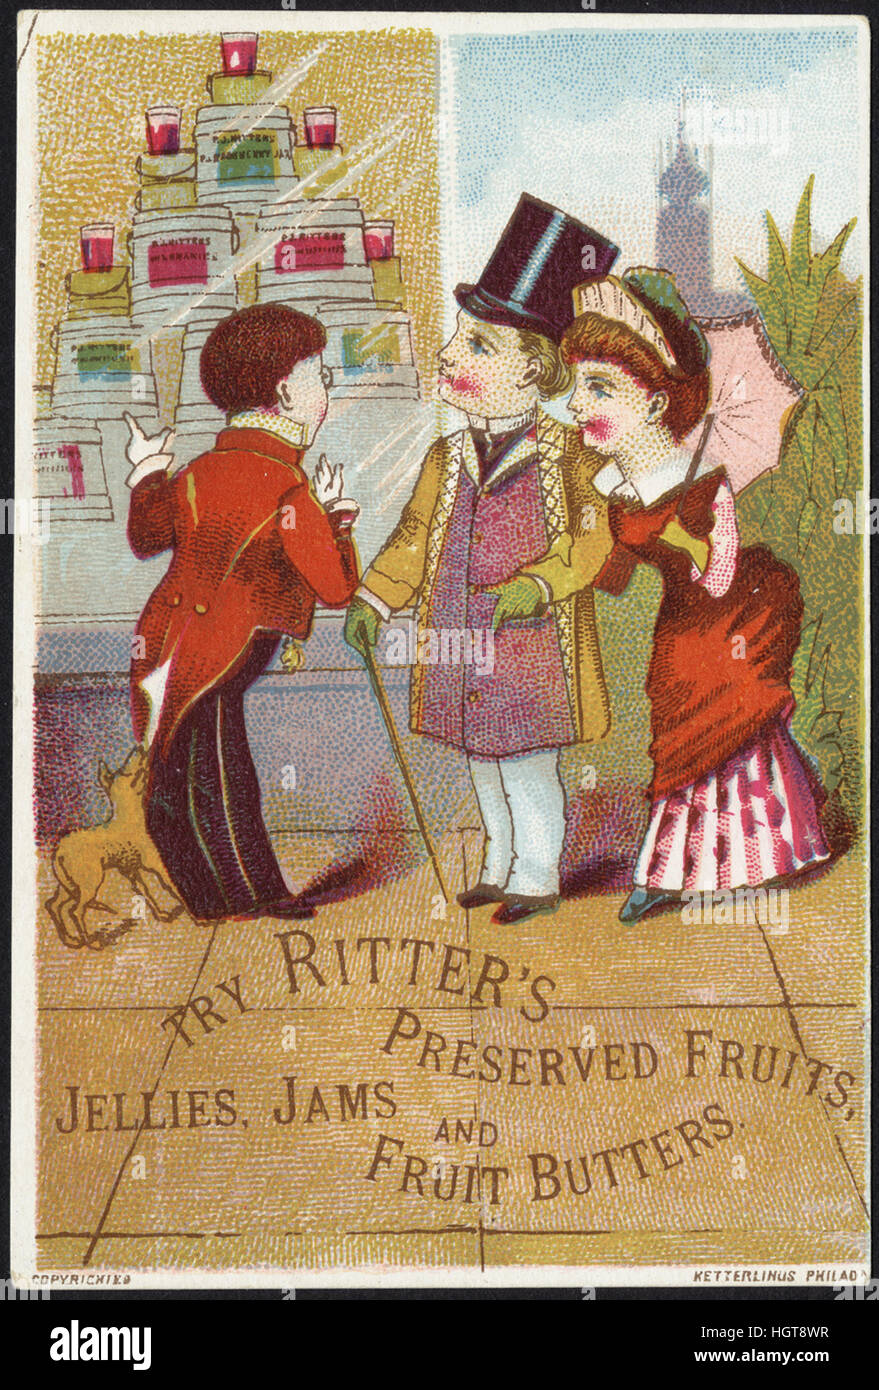 Provare a Ritter di conserve di frutta, gelatine, marmellate e frutta butters [Anteriore] - Il commercio di generi alimentari Card Foto Stock